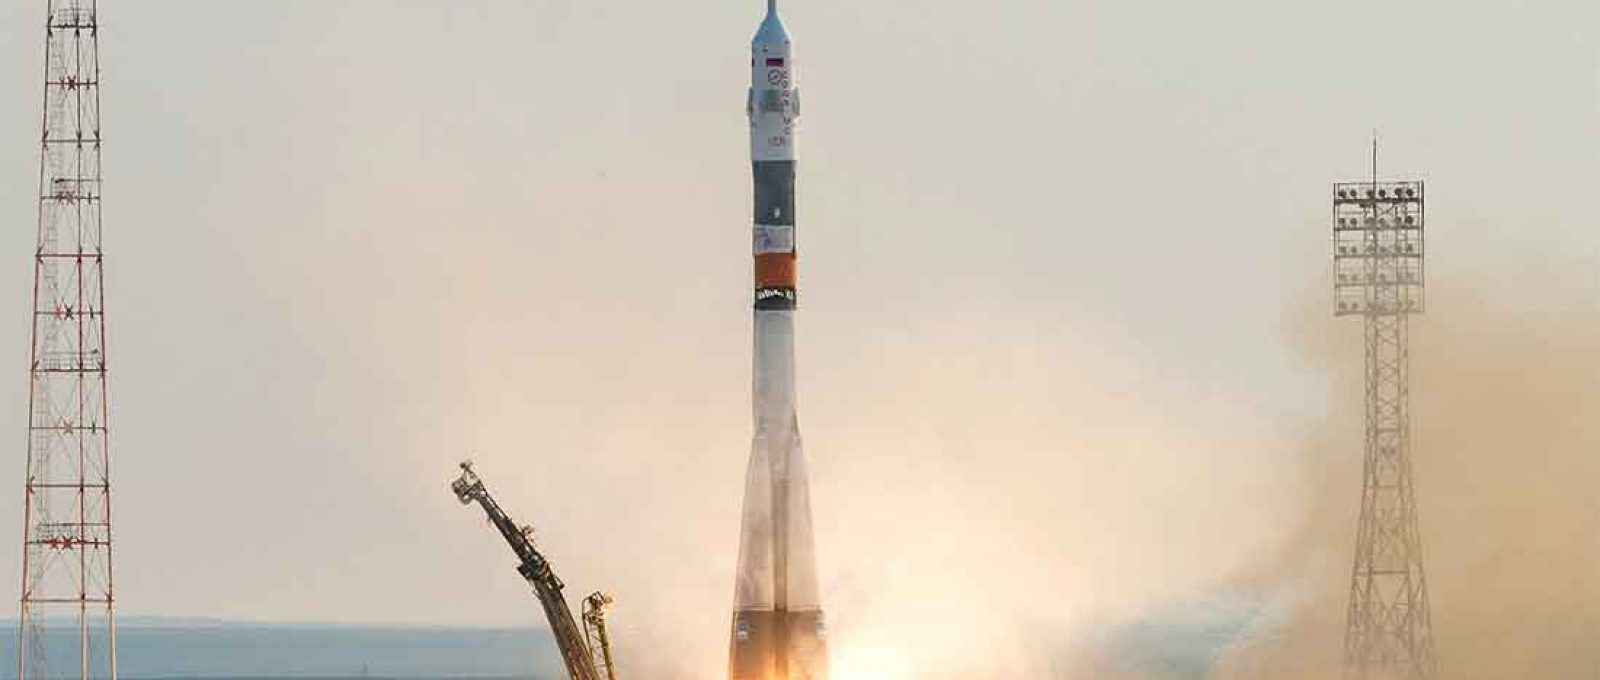 Um foguete Soyuz-FG é lançado com três tripulantes para a Estação Espacial Internacional (Foto: NASA).